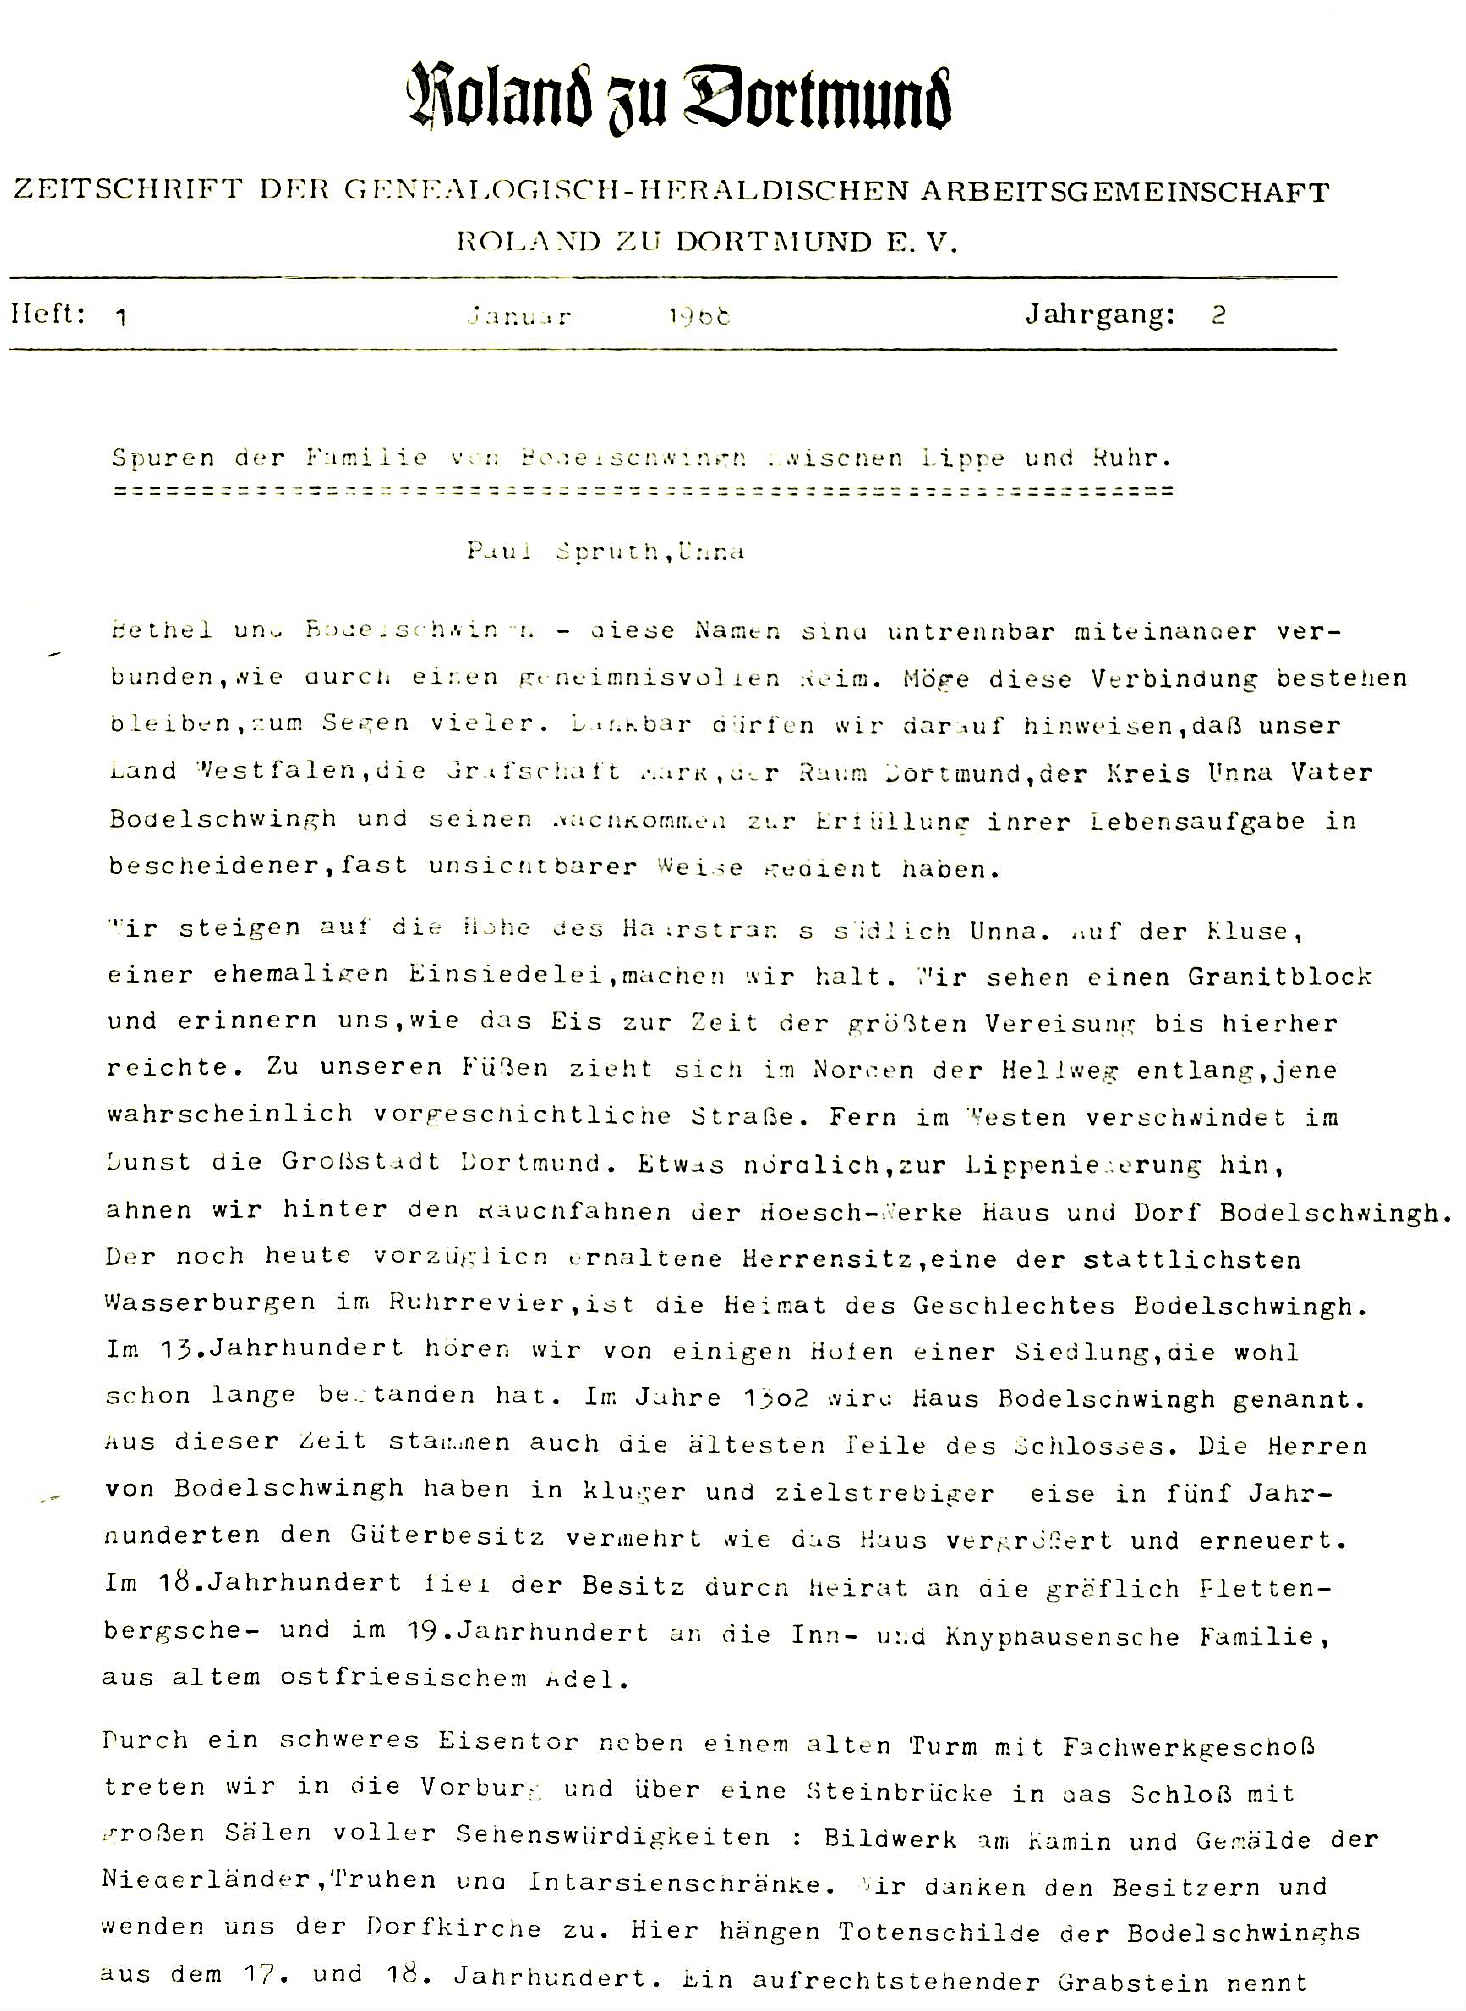 RzD-Zeitschrift, Band 1, Hefte 1-12, Jg. 2-4 (1968 – 1970)